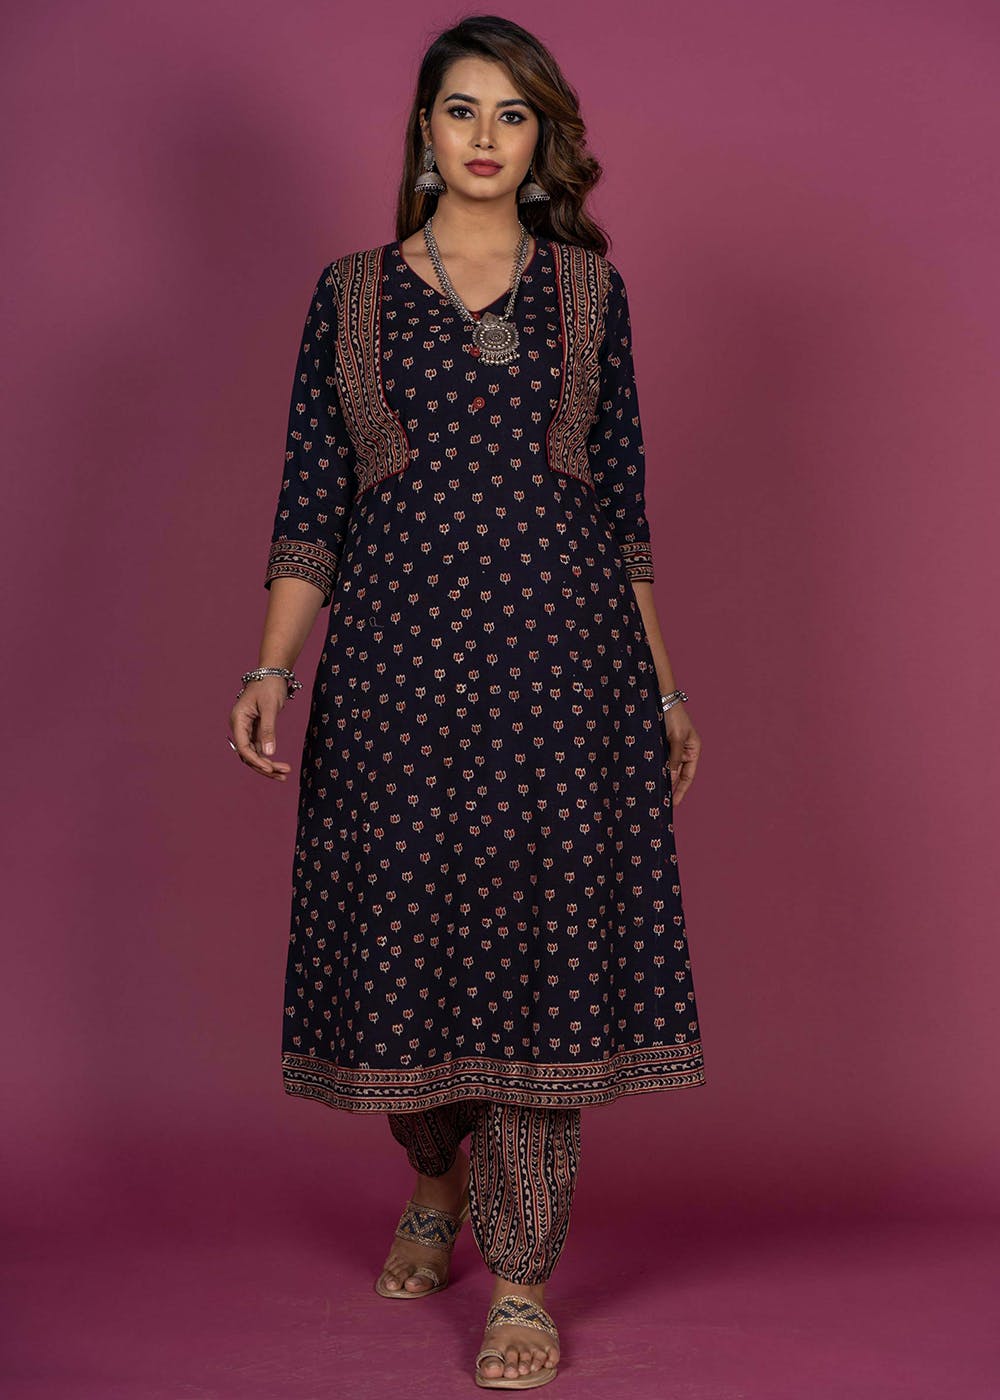 Get Black Ajrakh Hand Block Print Stitch Kurta Dress at ₹ 2450 | LBB Shop